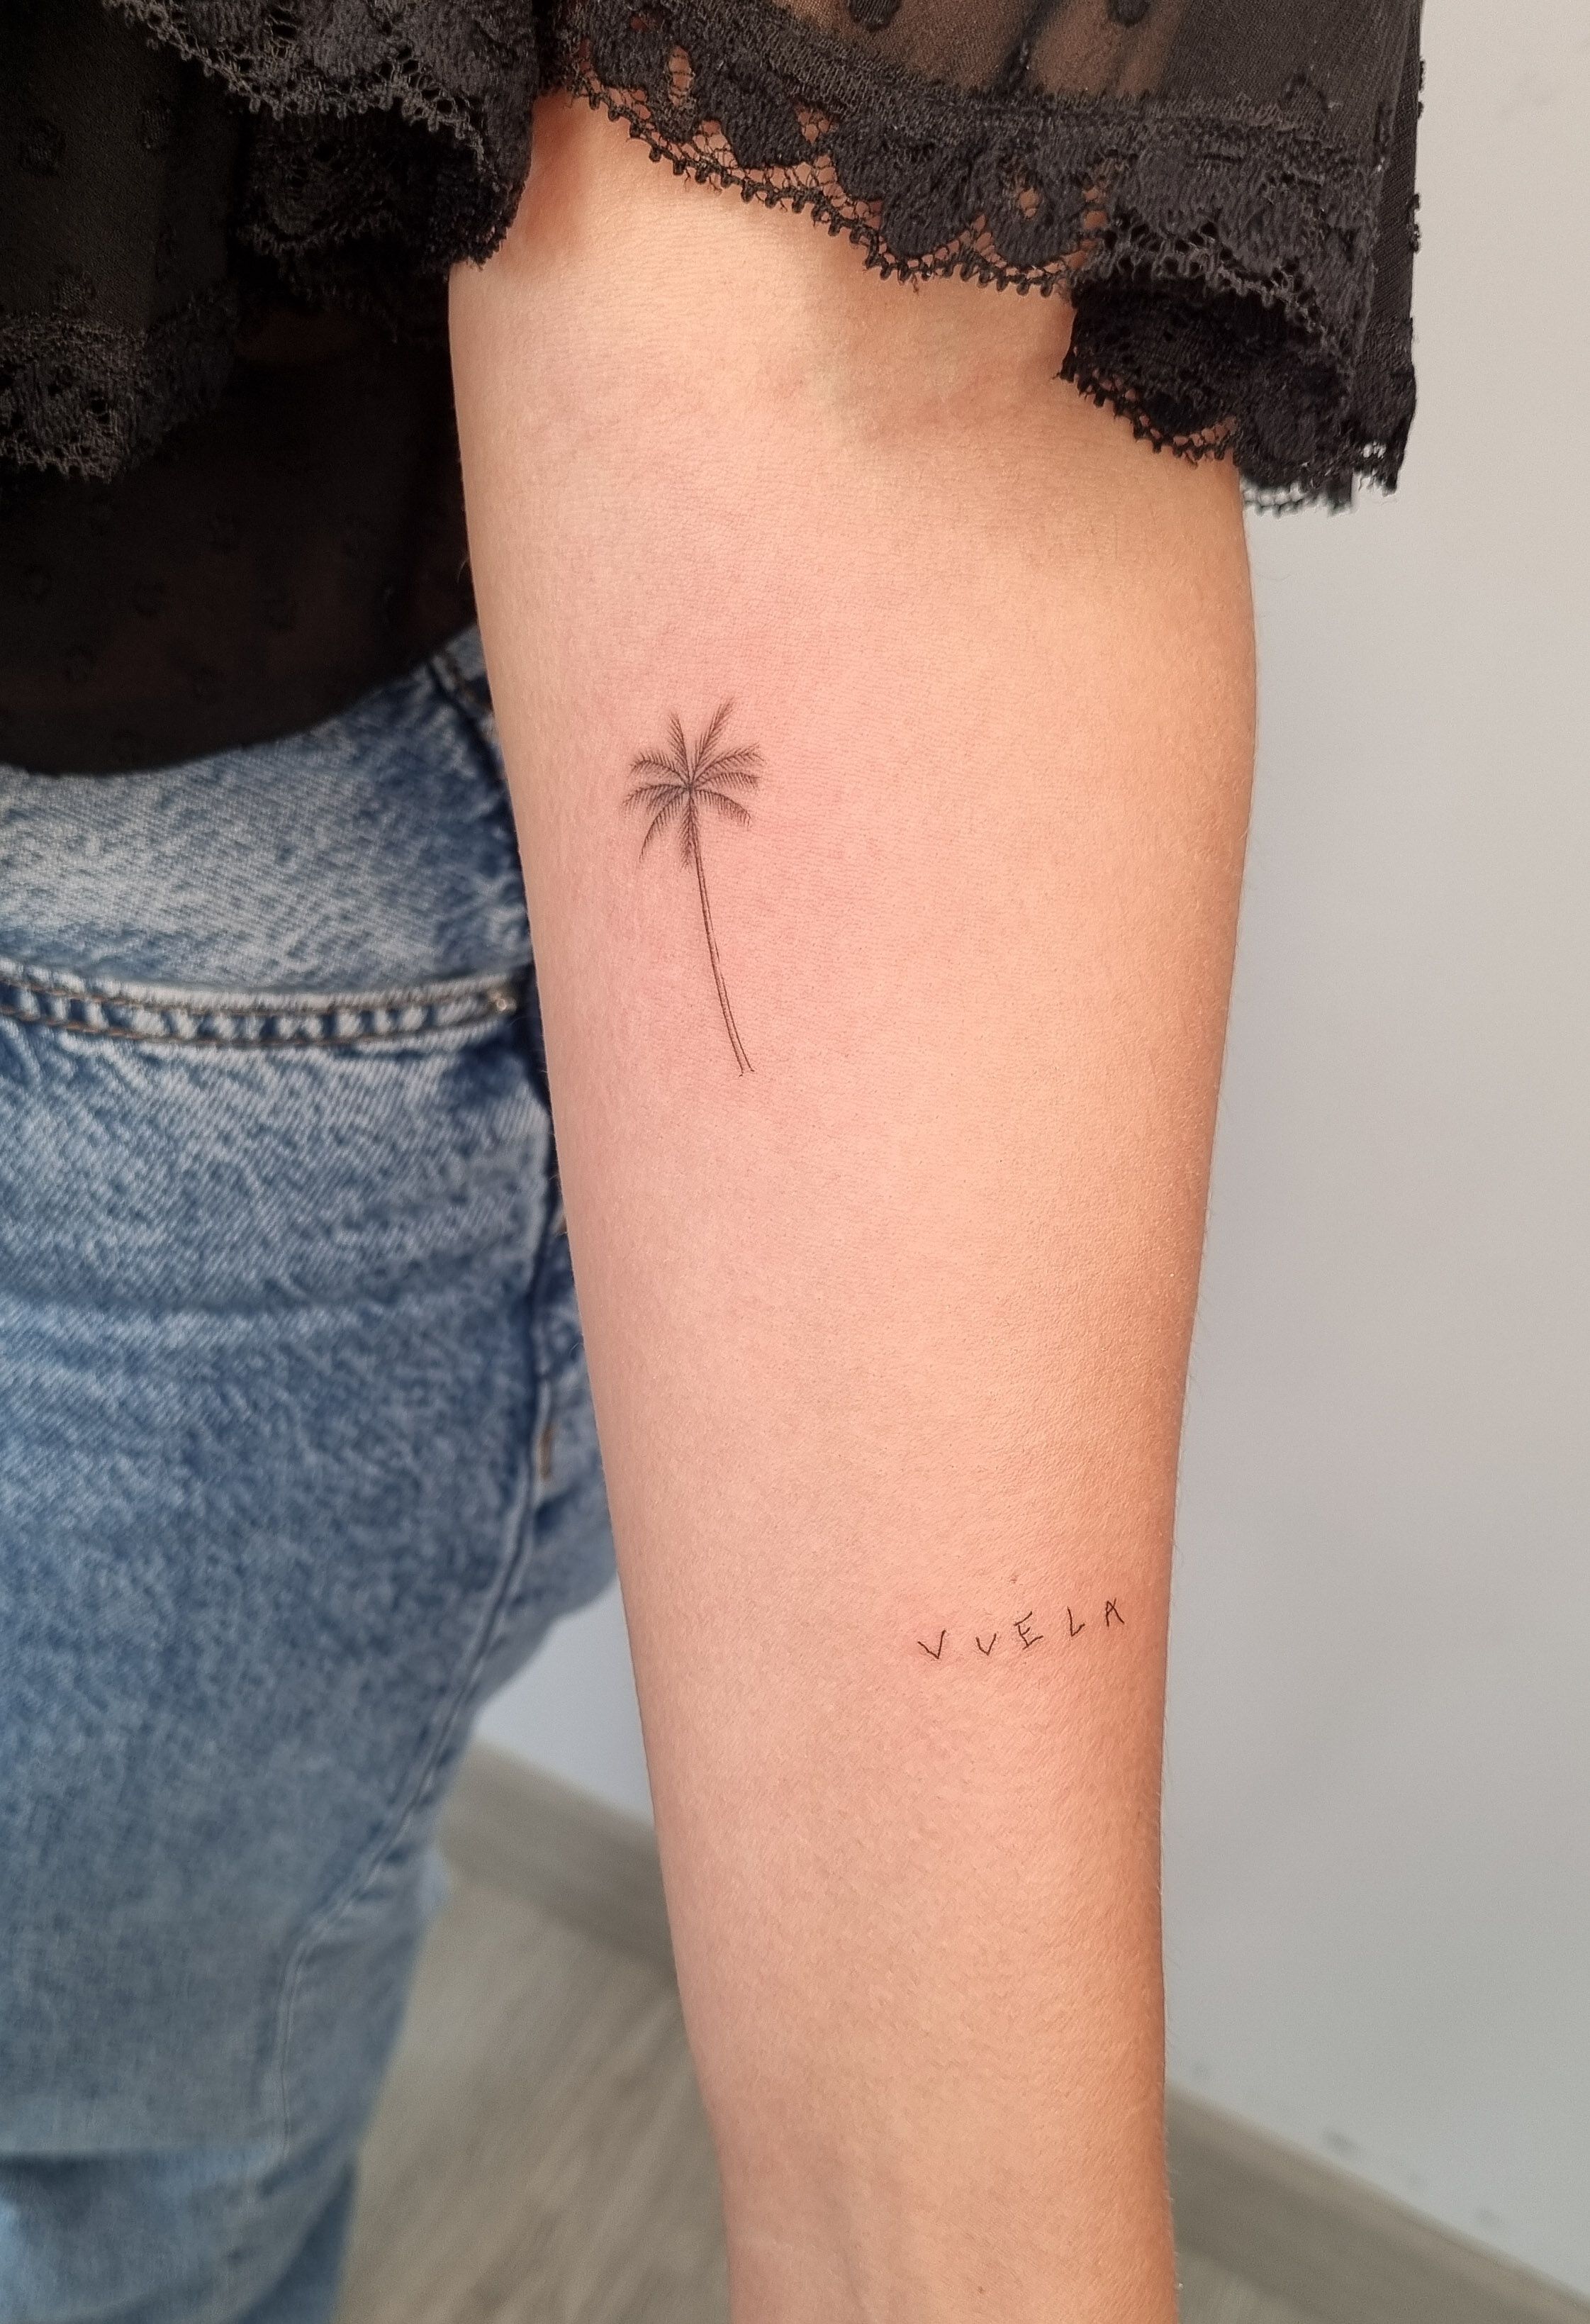 Tatuajes diminutos y minimalistas que son inspiración de verano